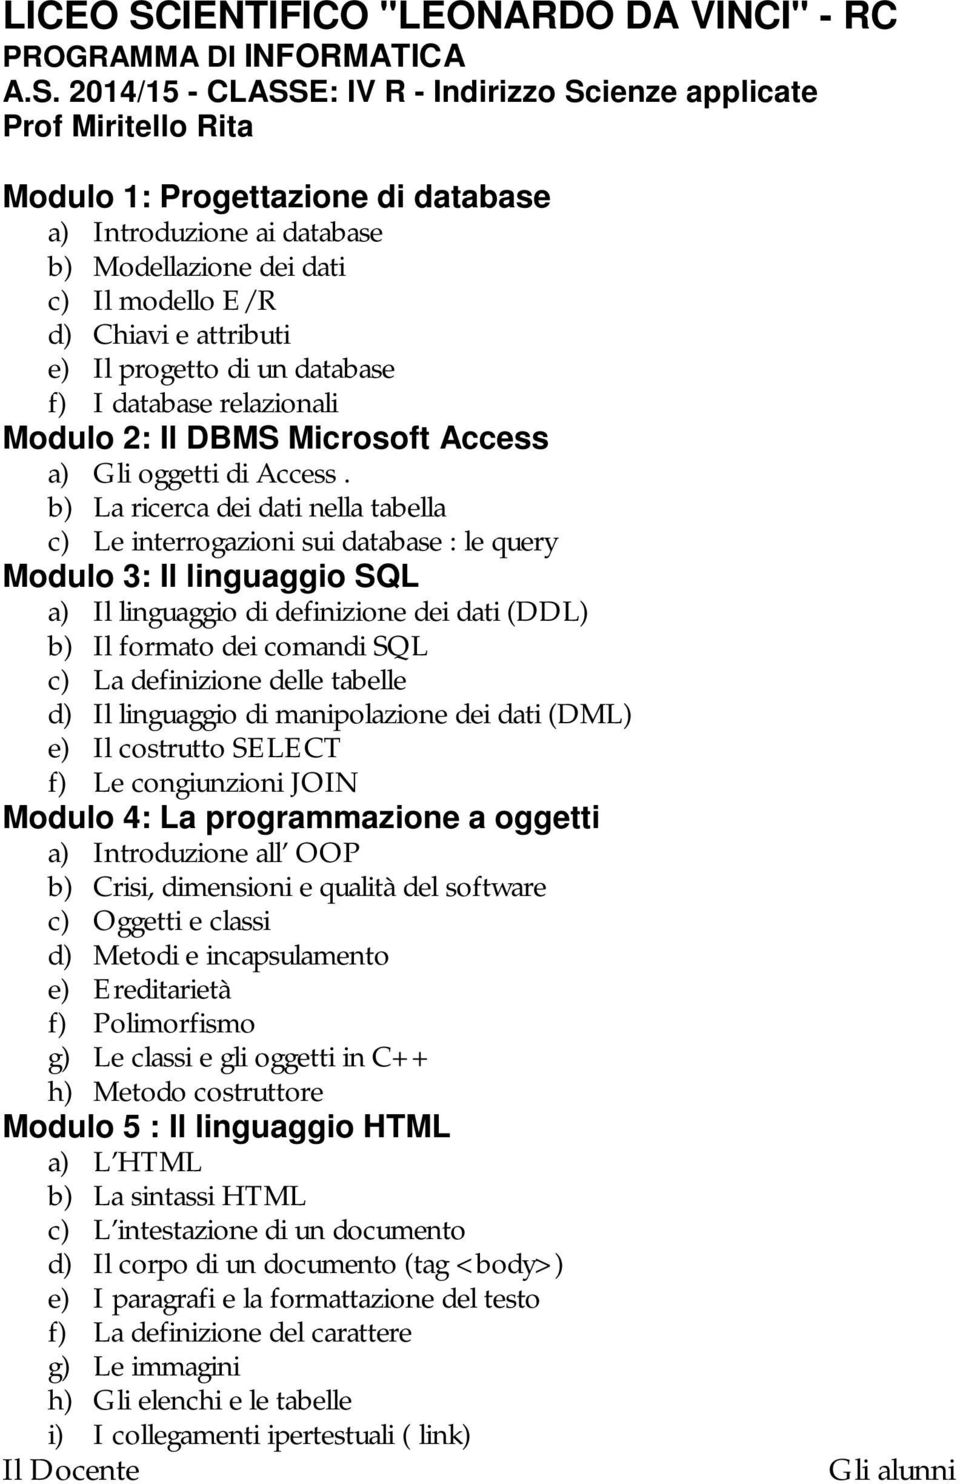 2014/15 - CLASSE: IV R - Indirizzo Scienze applicate Modulo 1: Progettazione di database a) Introduzione ai database b) Modellazione dei dati c) Il modello E/R d) Chiavi e attributi e) Il progetto di